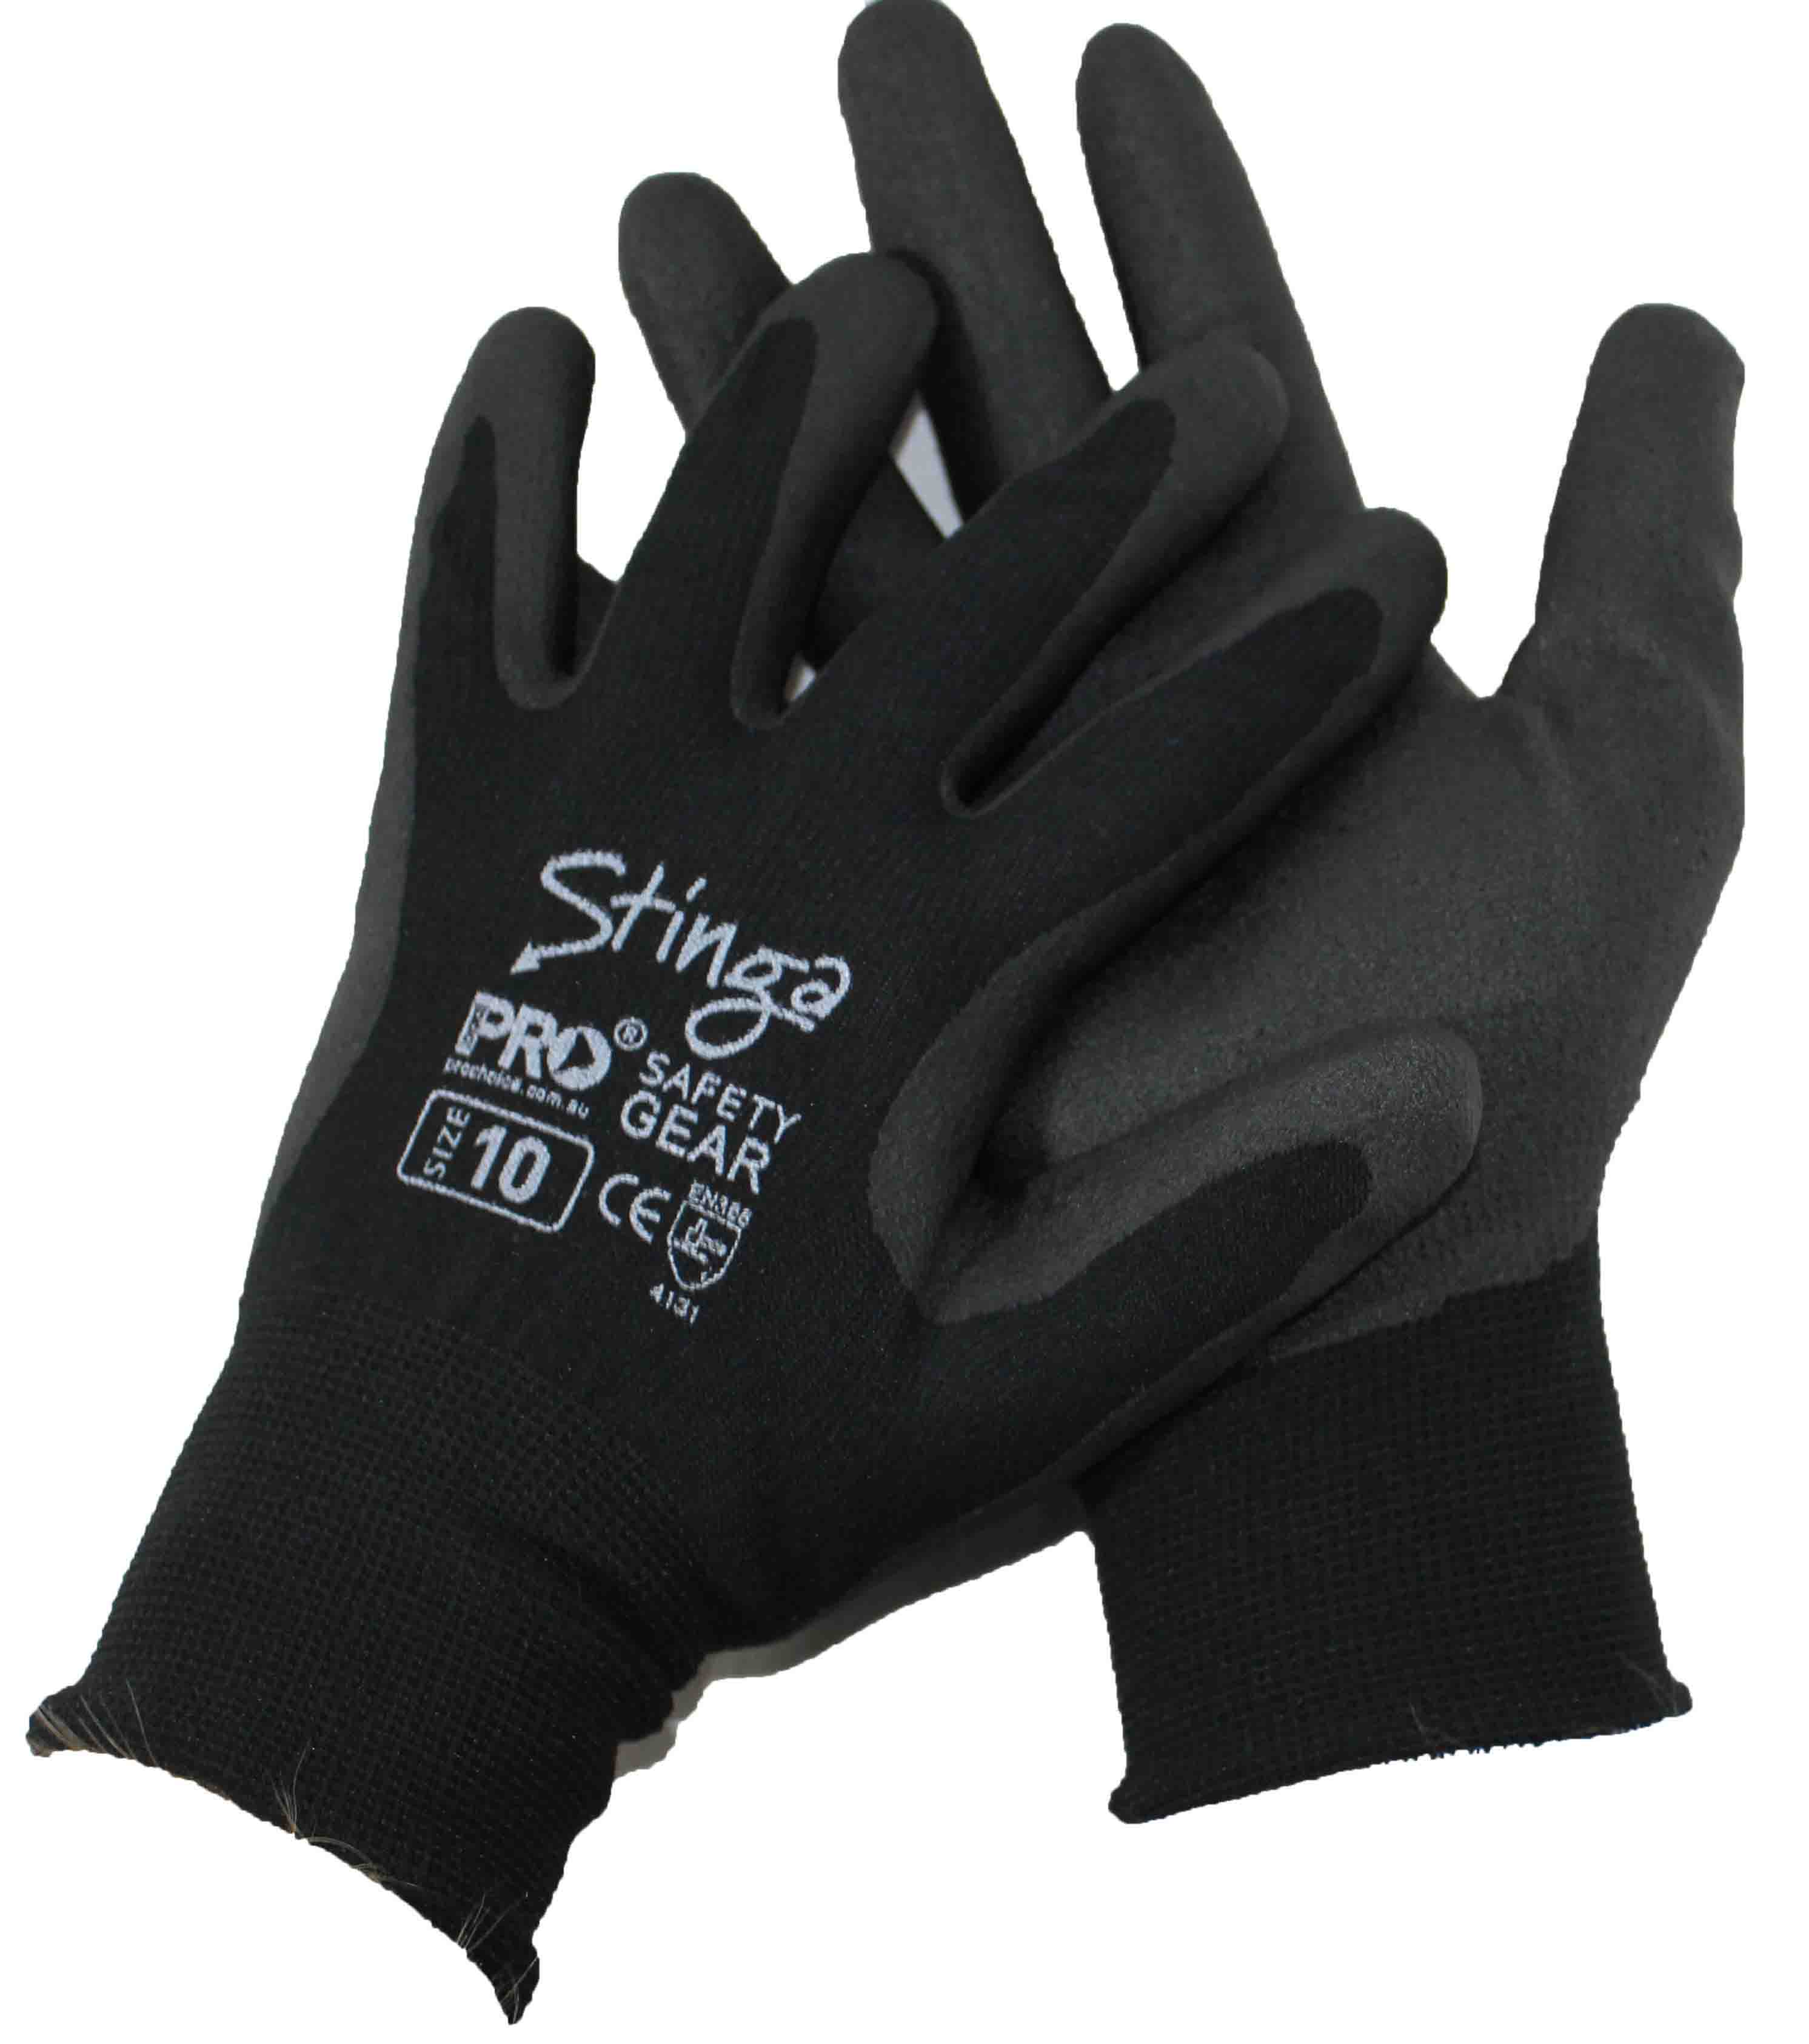 Dirty Rigger Comfort Fit Framer/Ruler Protective Gloves medium Black